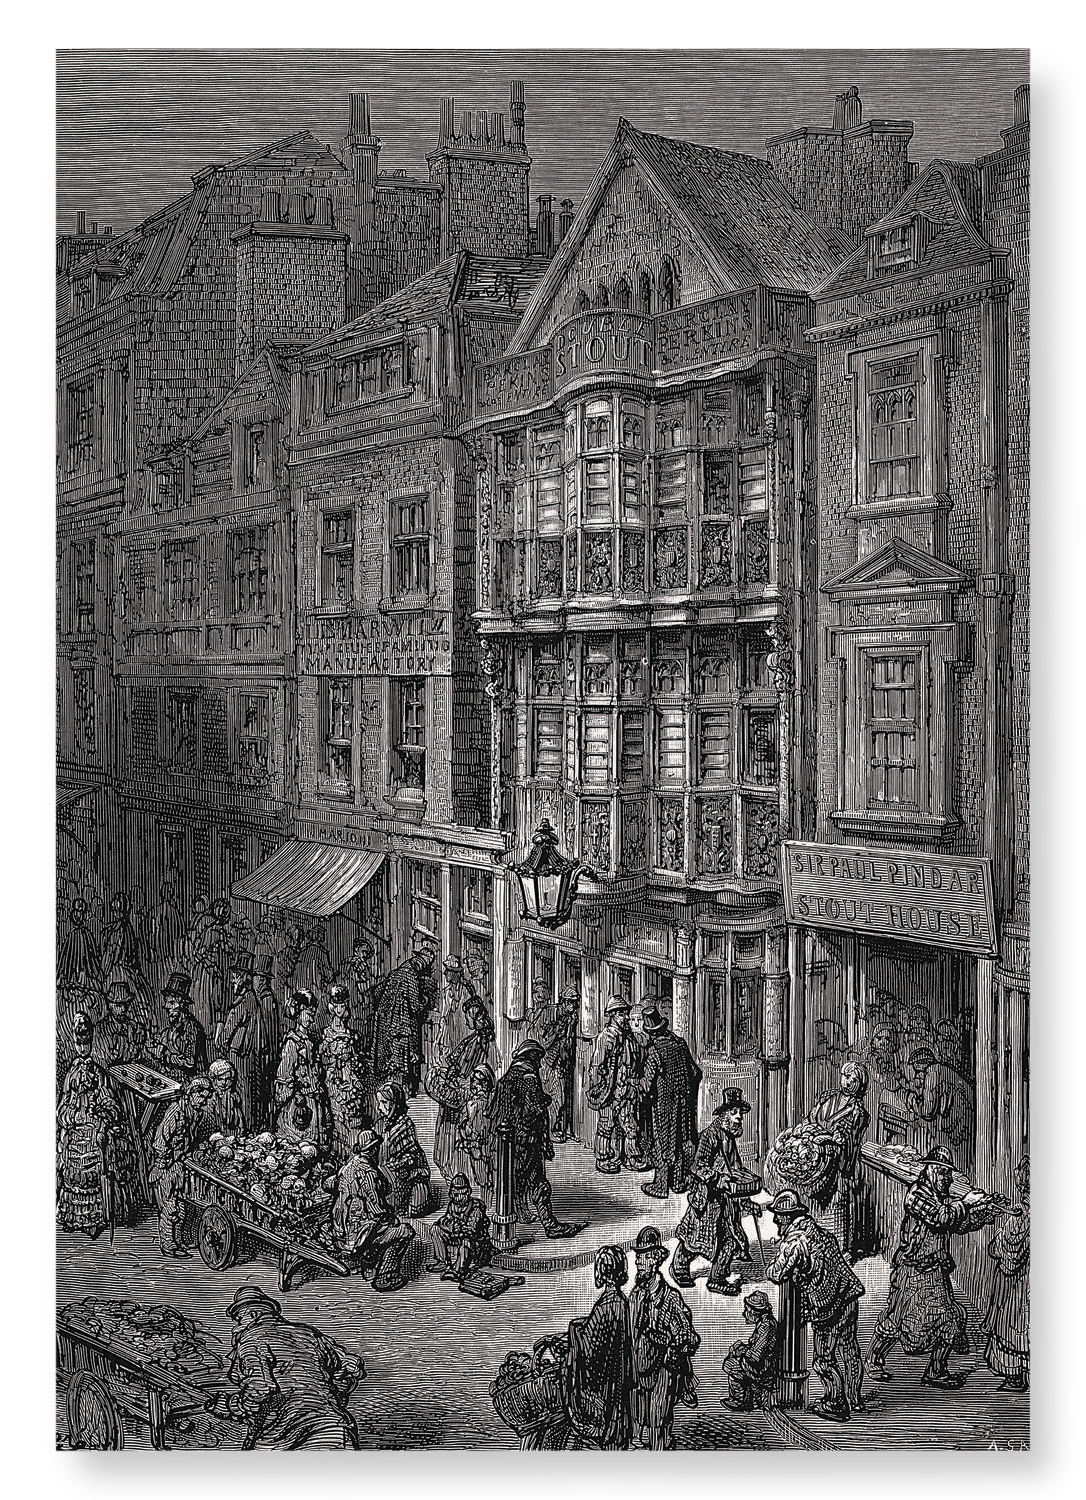 BISHOPSGATE STREET (1873)